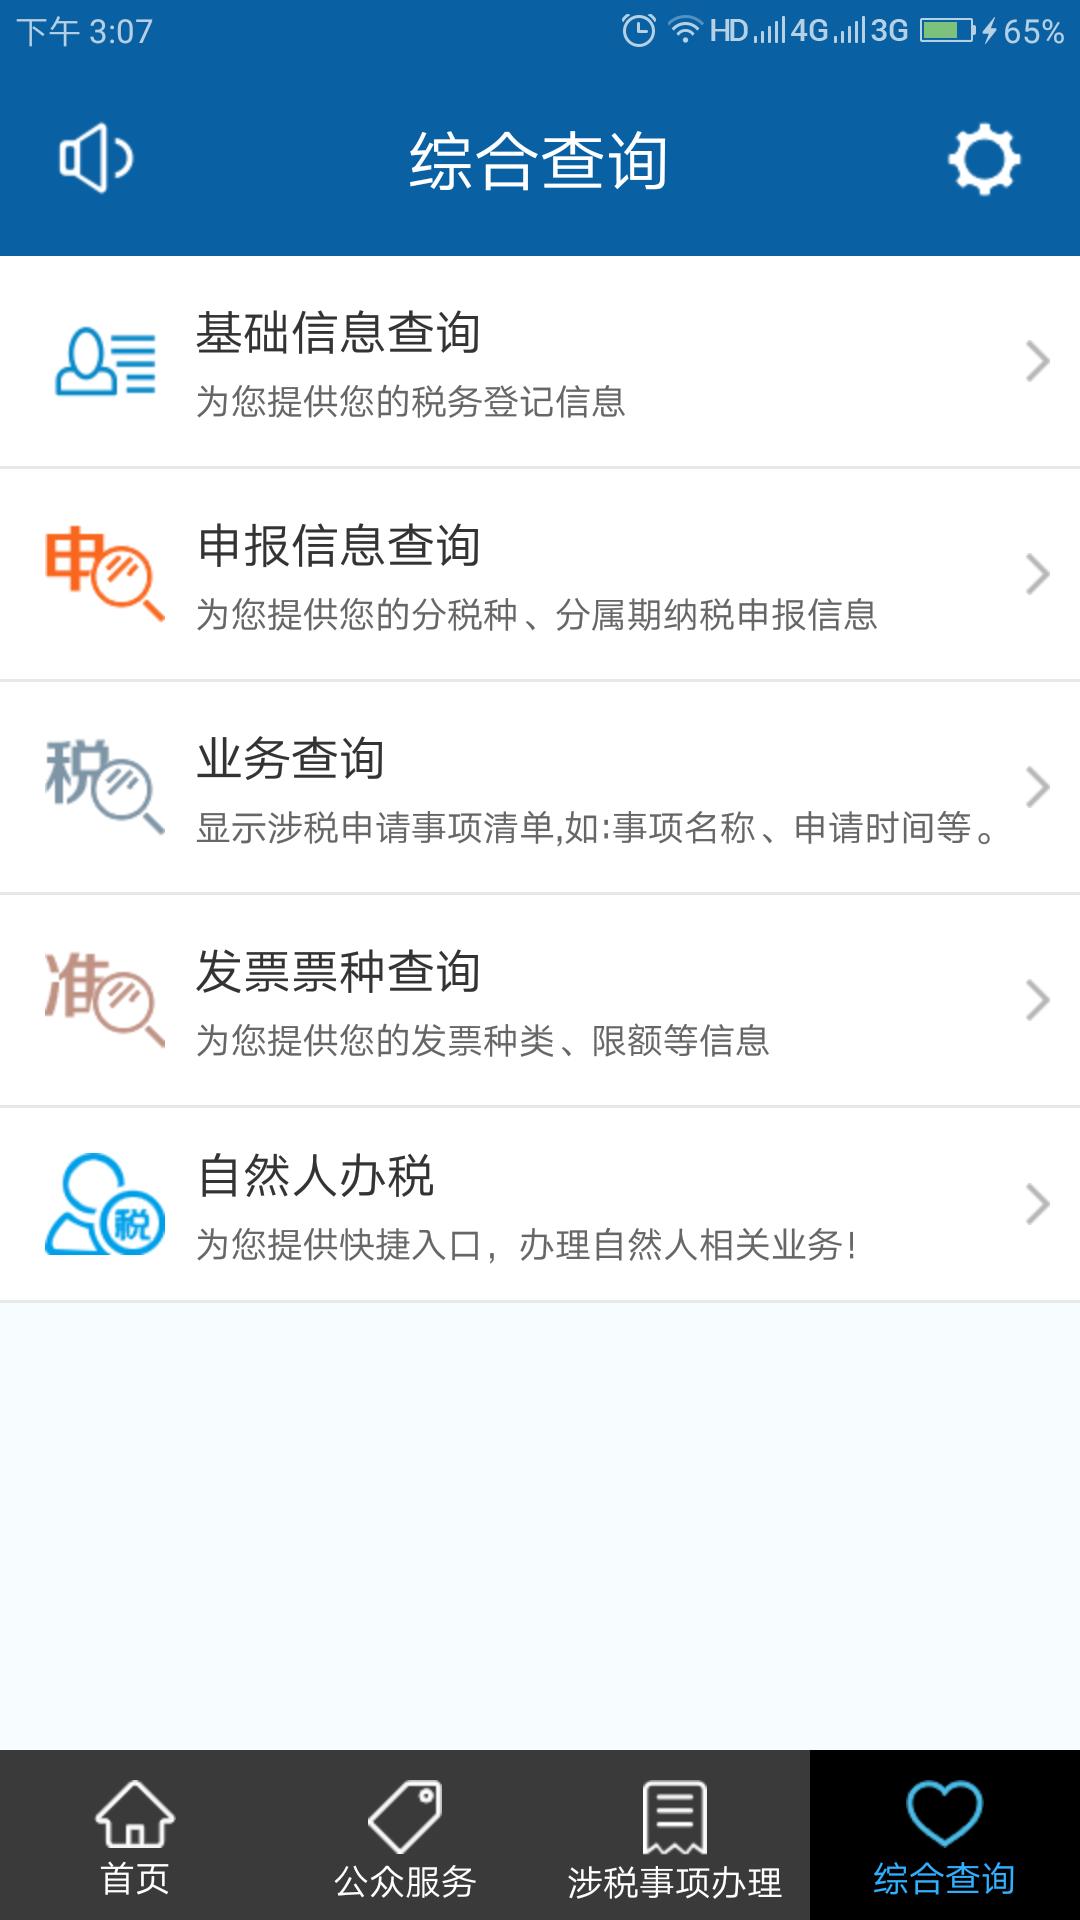 皖税通-安徽税务app最新版v2.4.4